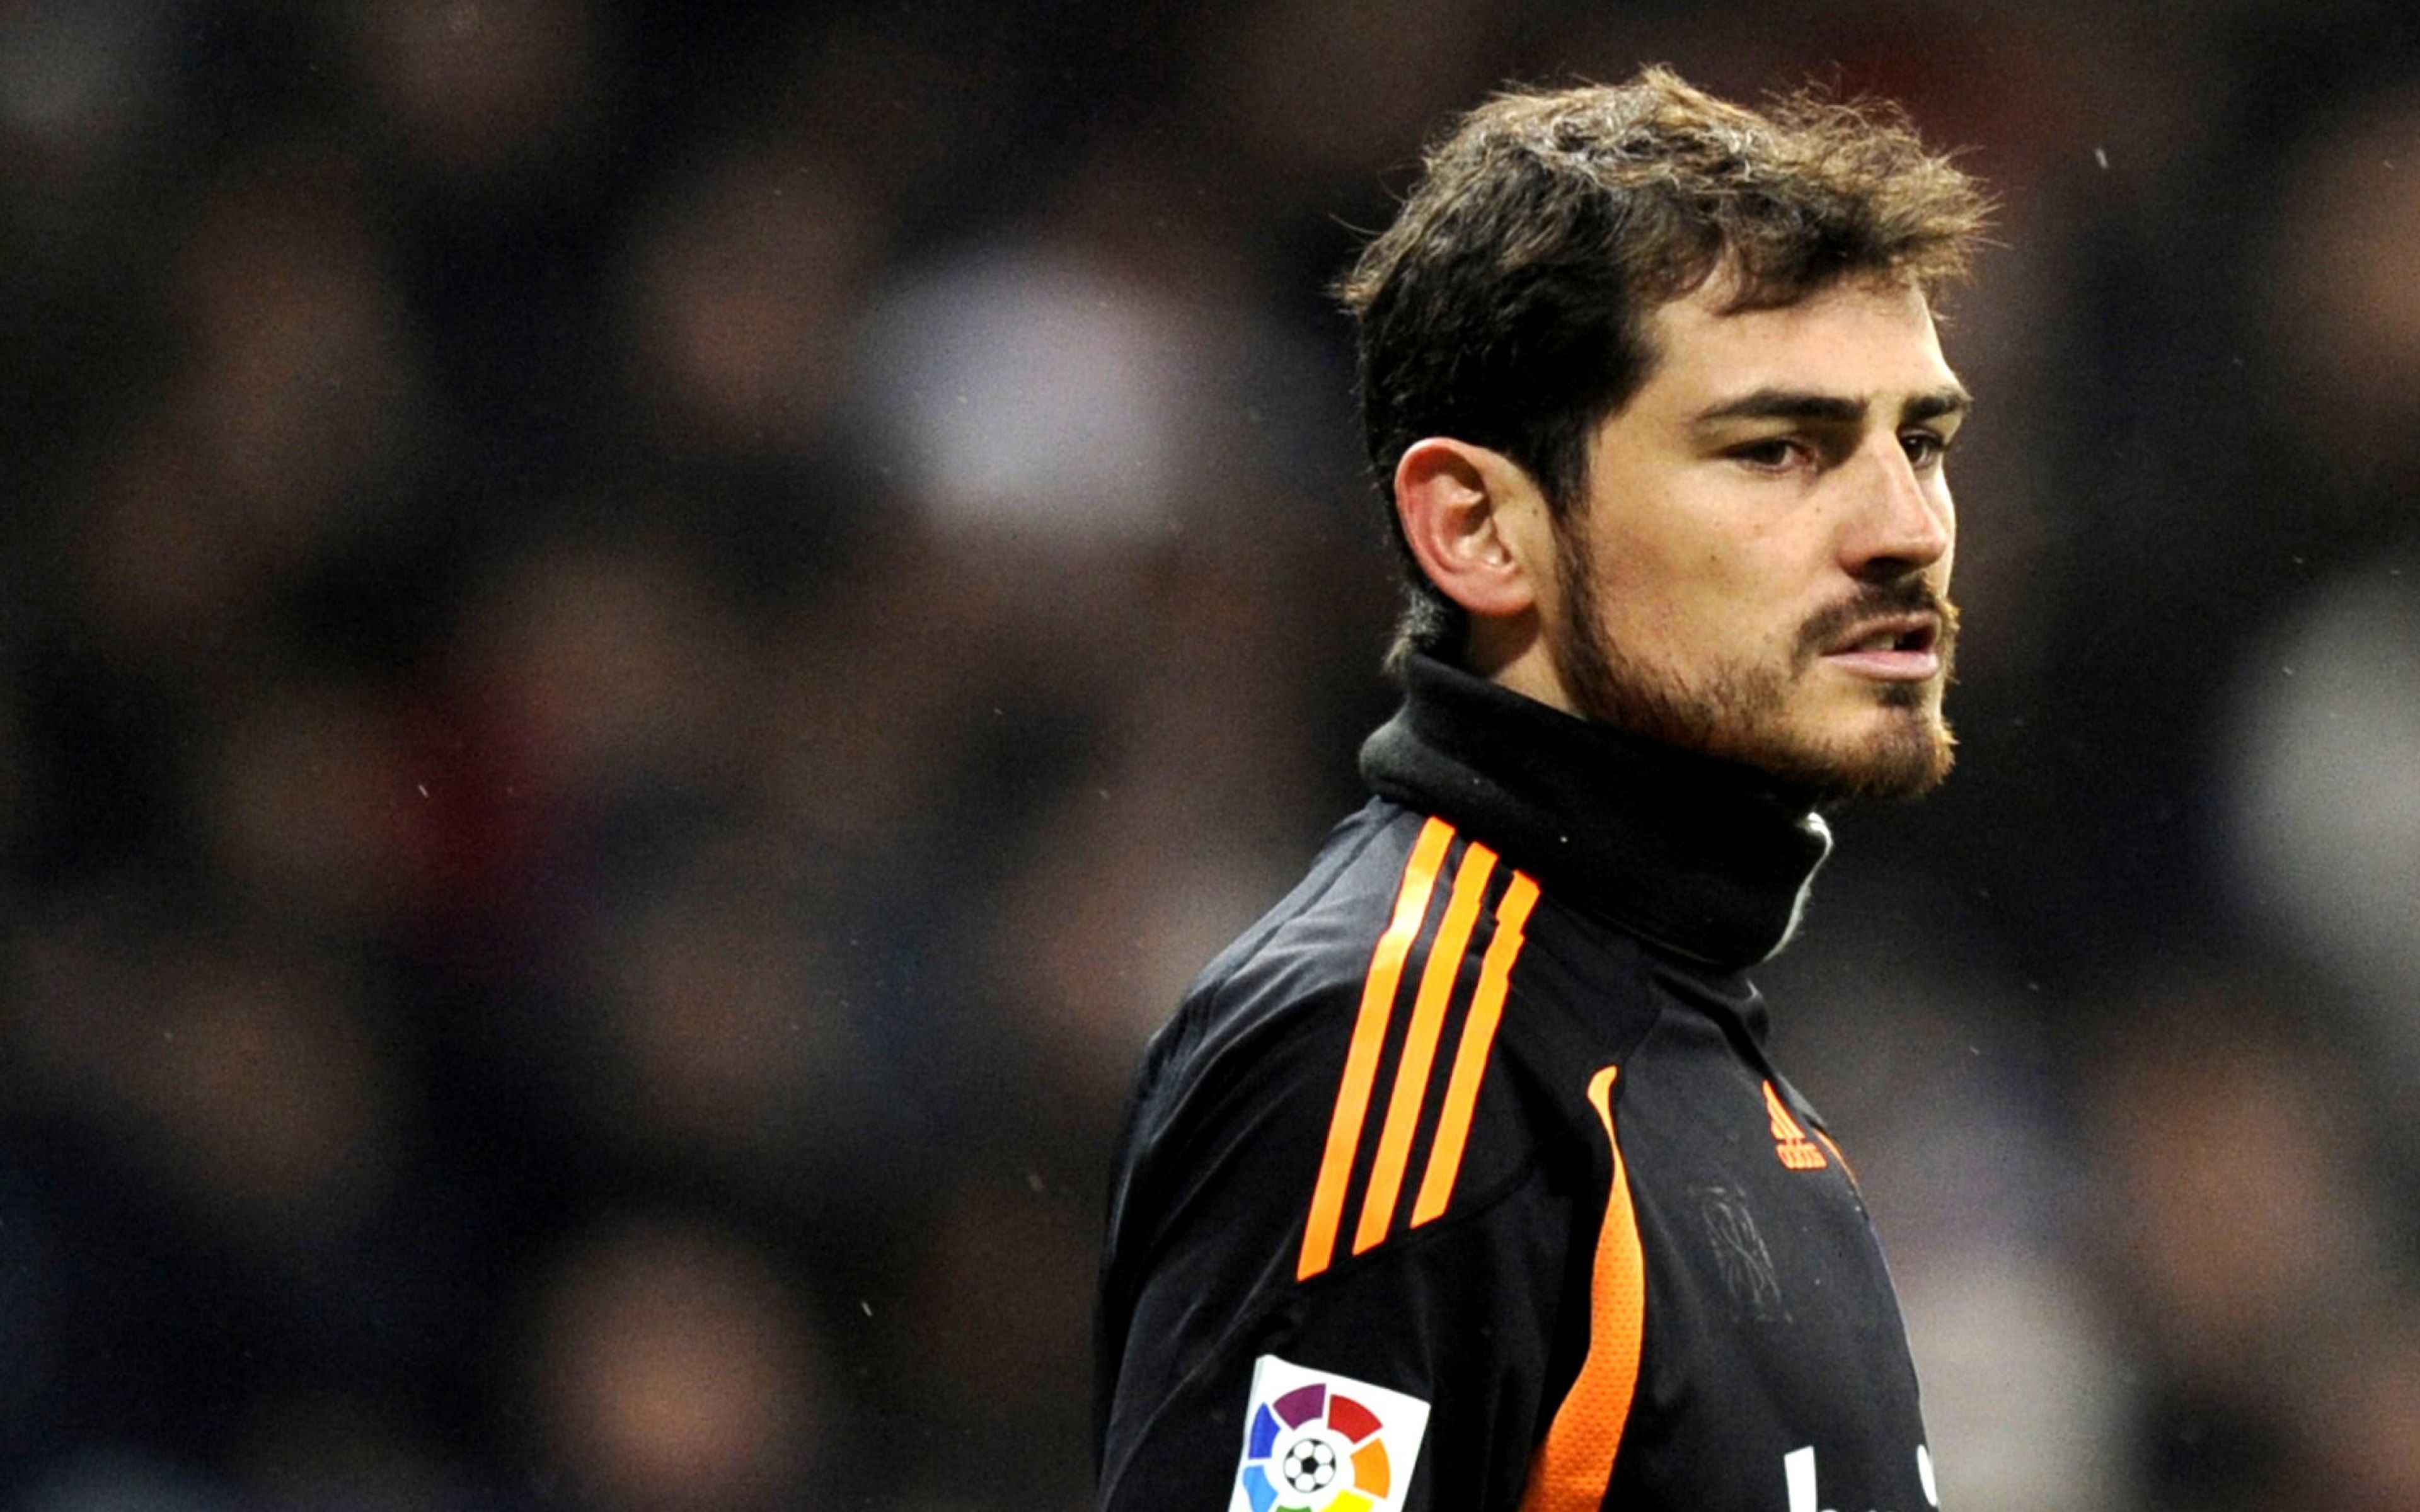 Iker Casillaswallpaper.net